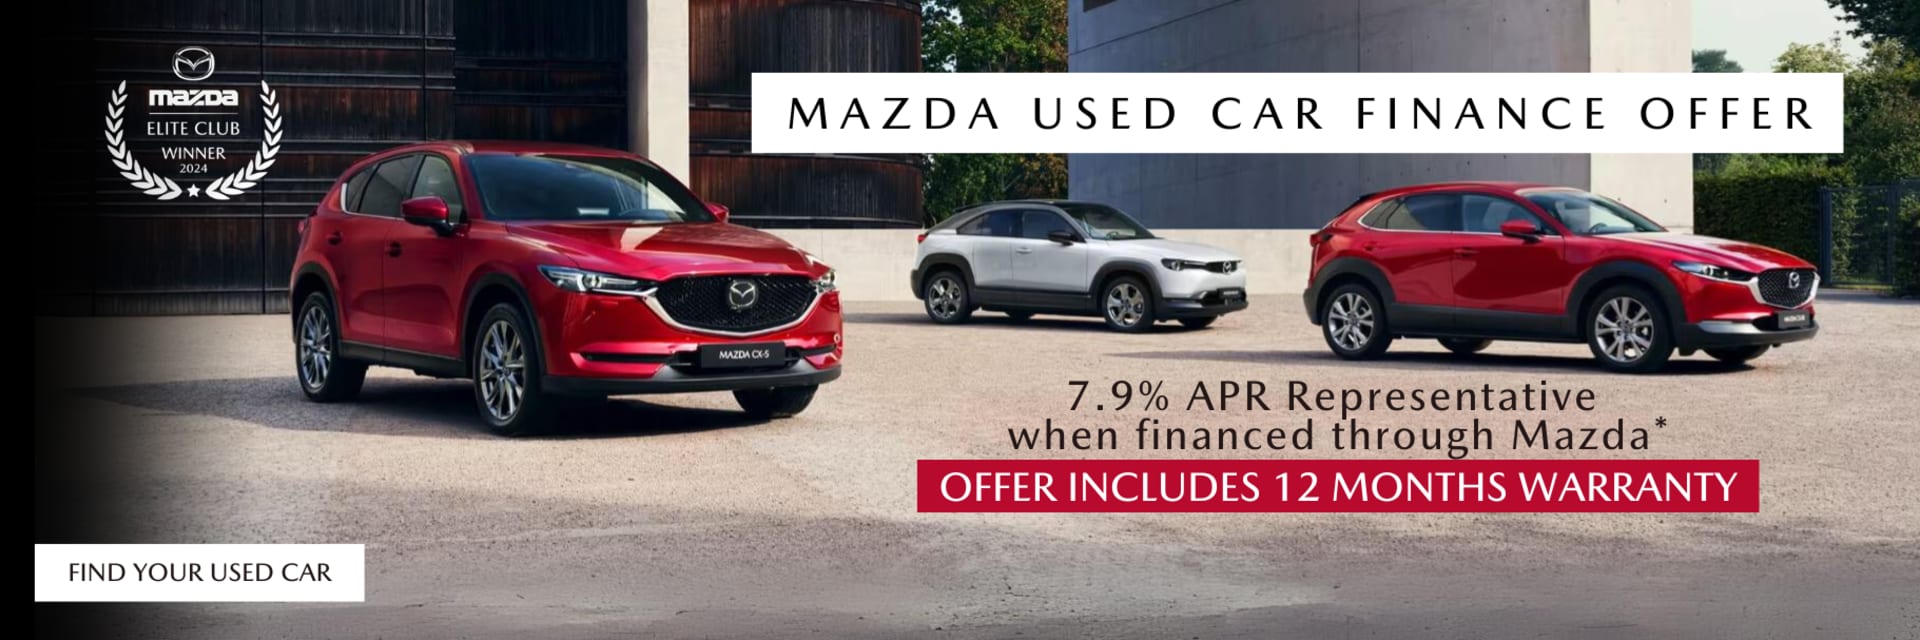 Mazda Used Car Range